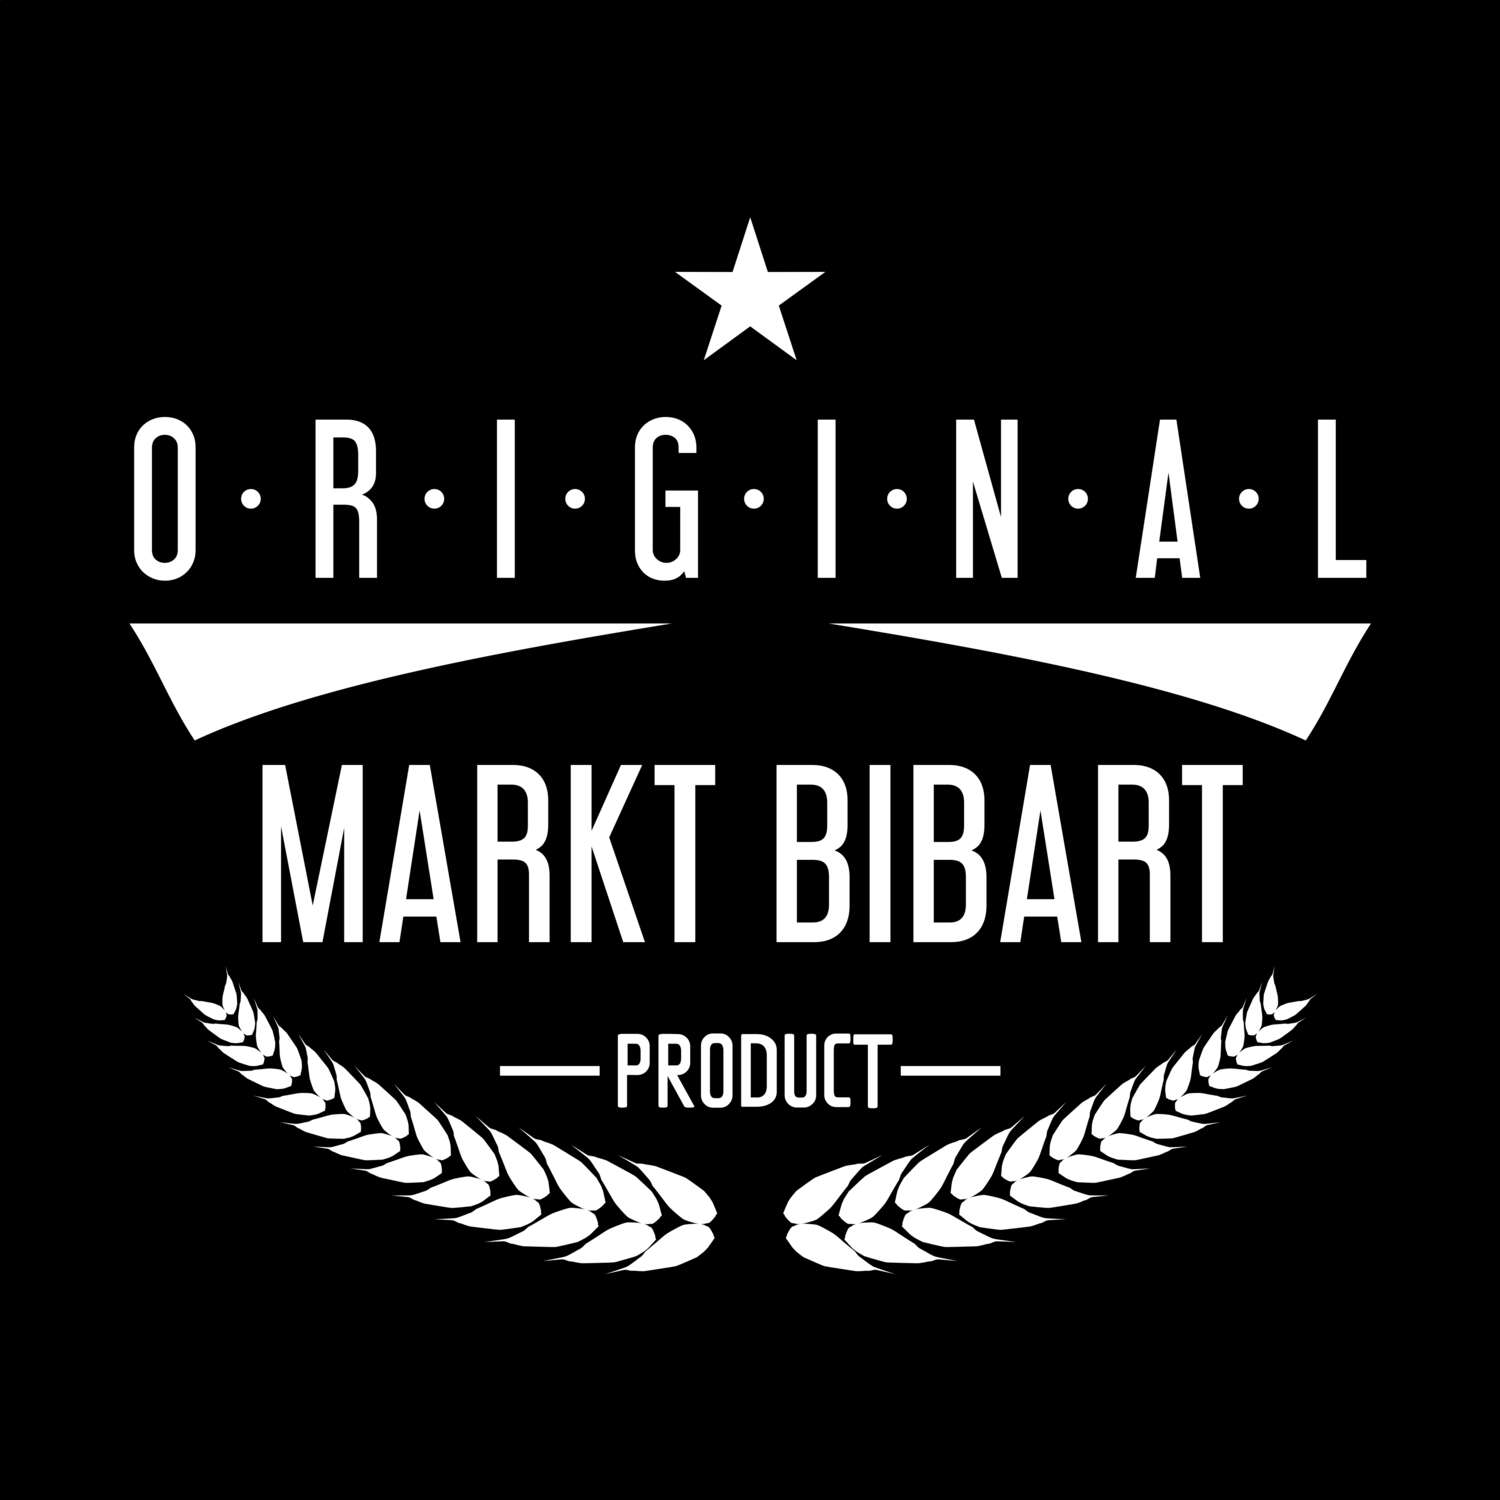 Markt Bibart T-Shirt »Original Product«